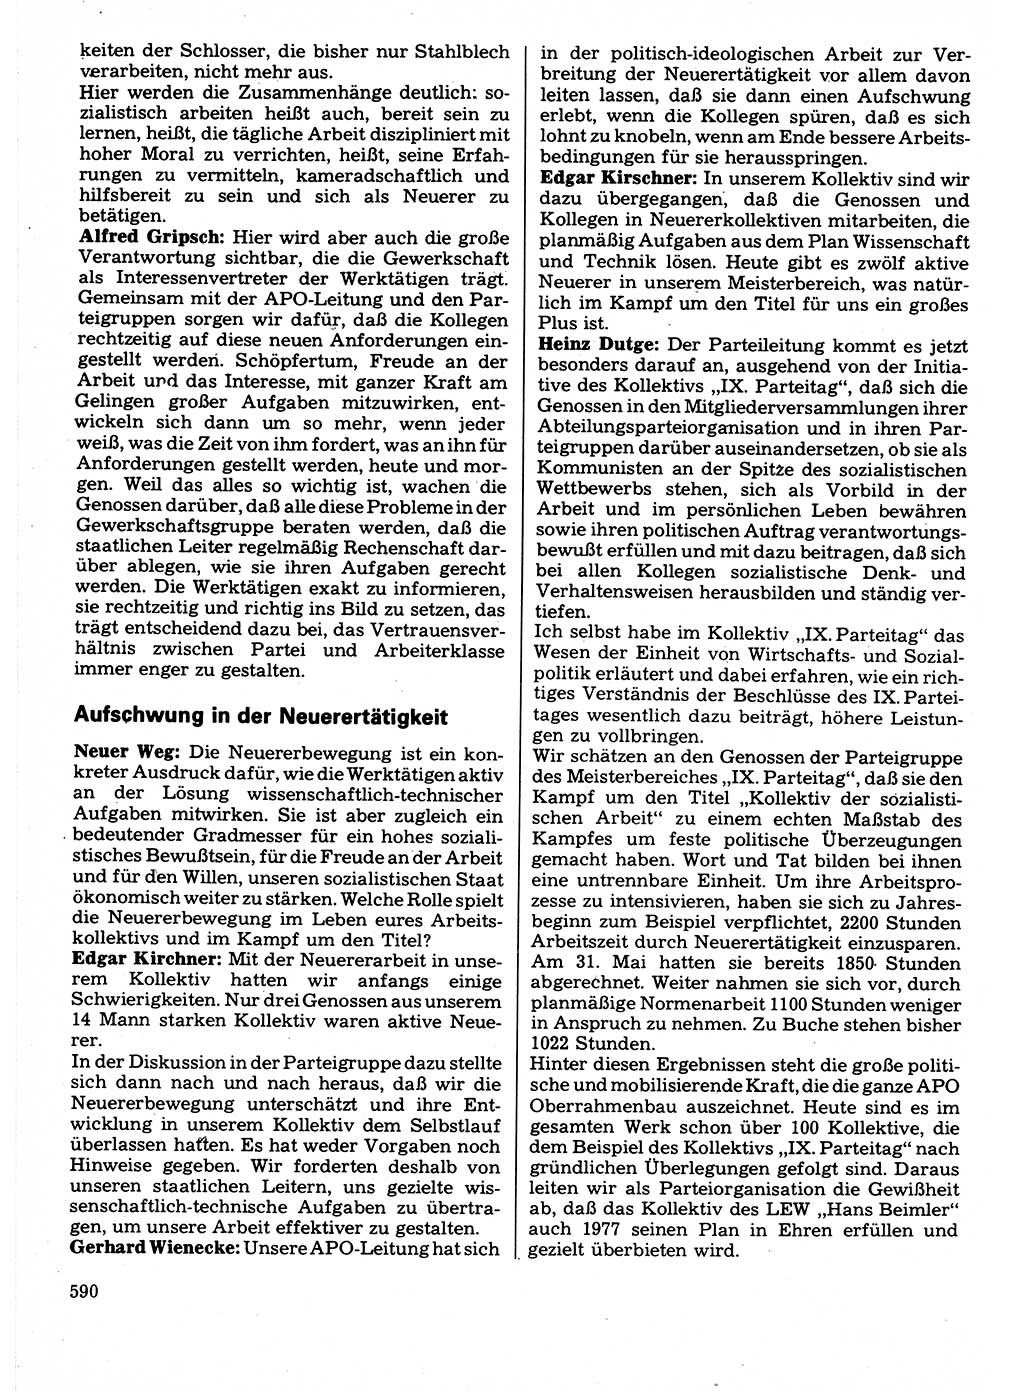 Neuer Weg (NW), Organ des Zentralkomitees (ZK) der SED (Sozialistische Einheitspartei Deutschlands) für Fragen des Parteilebens, 32. Jahrgang [Deutsche Demokratische Republik (DDR)] 1977, Seite 590 (NW ZK SED DDR 1977, S. 590)